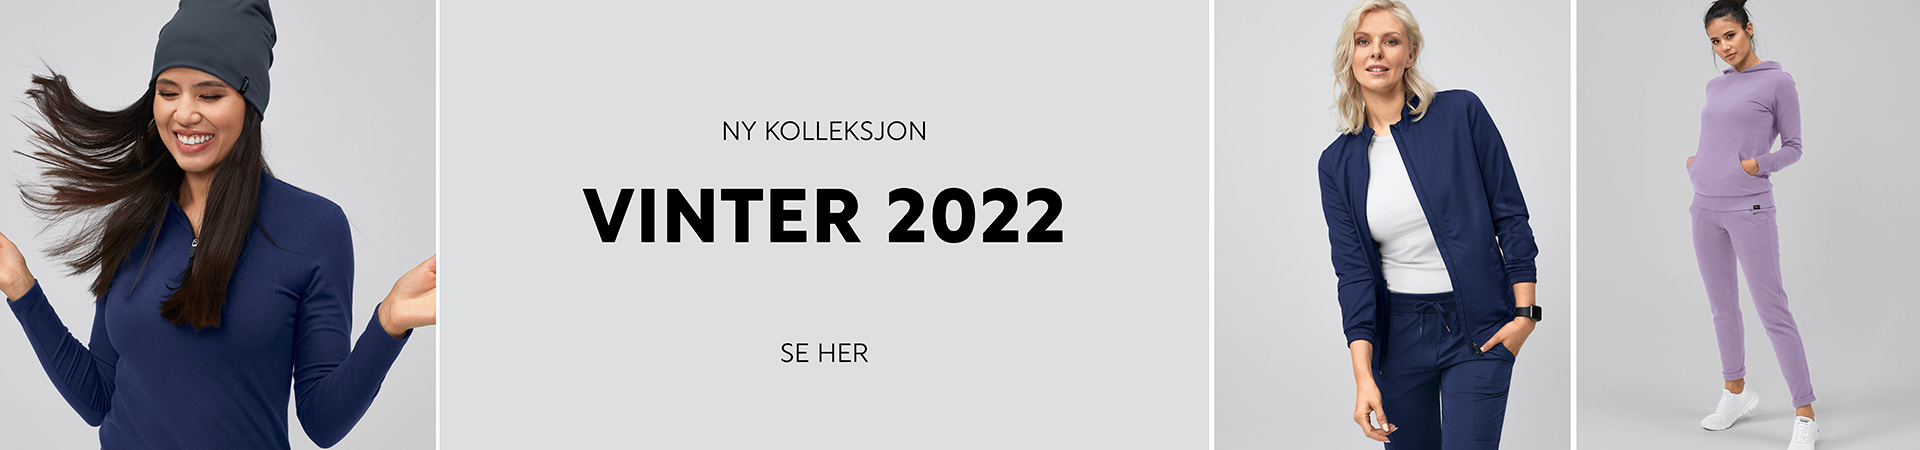 Ny kolleksjon Vinter 2022